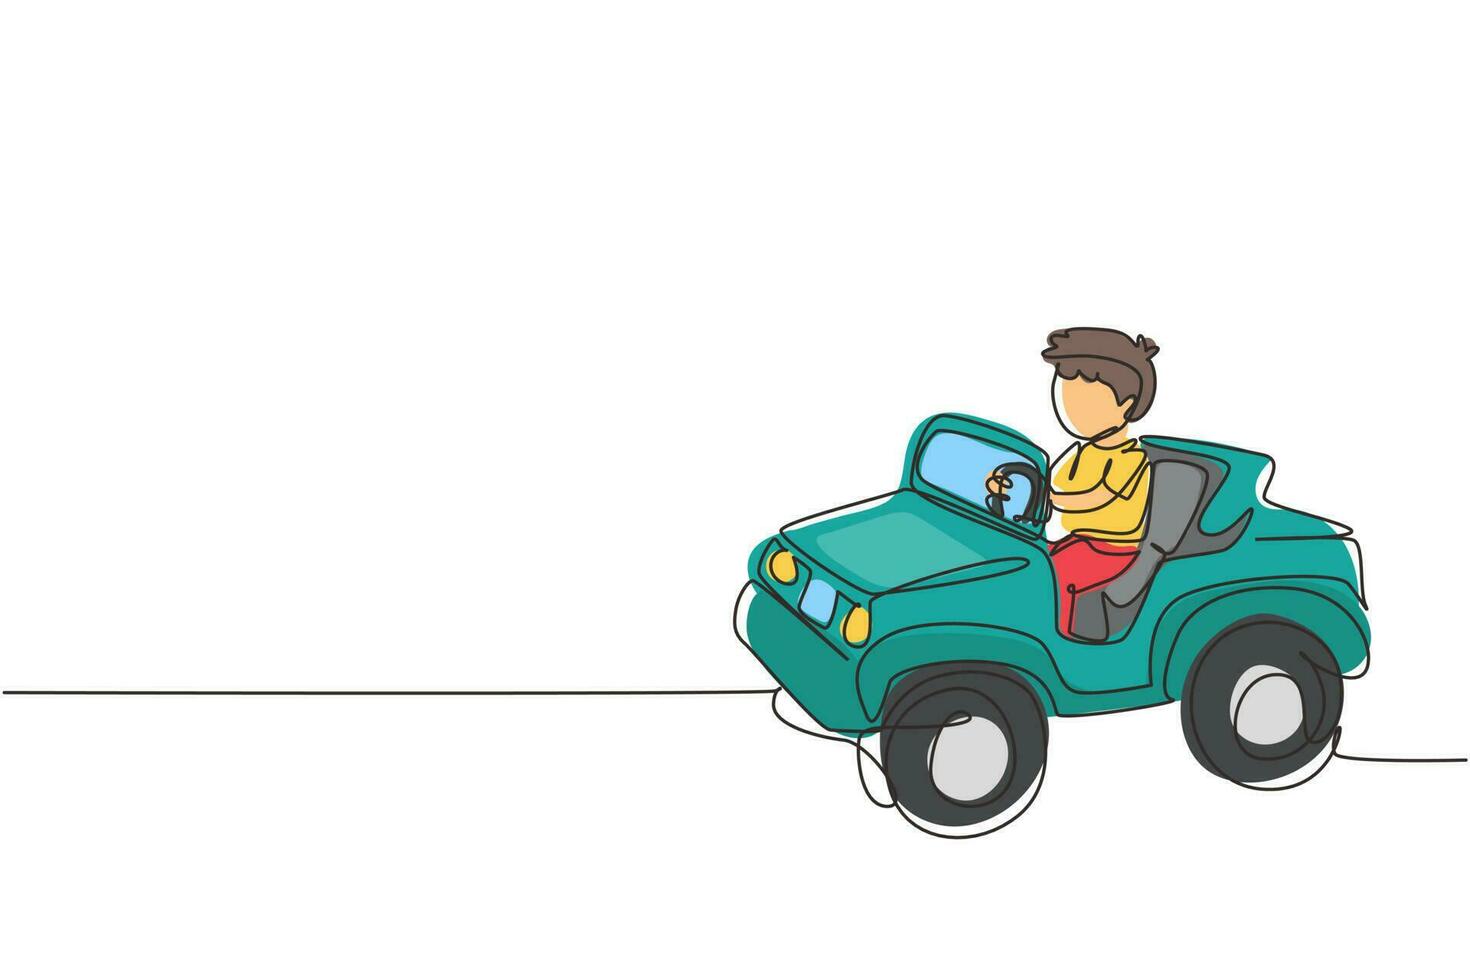 Single One Line Drawing Junge, der Auto fährt, glückliches süßes Kind. süßer kleiner Junge lächelt glücklich fahrendes Spielzeugauto. Kinderausflug im Kleinwagen. moderne grafische vektorillustration des ununterbrochenen zeichnendesigns vektor